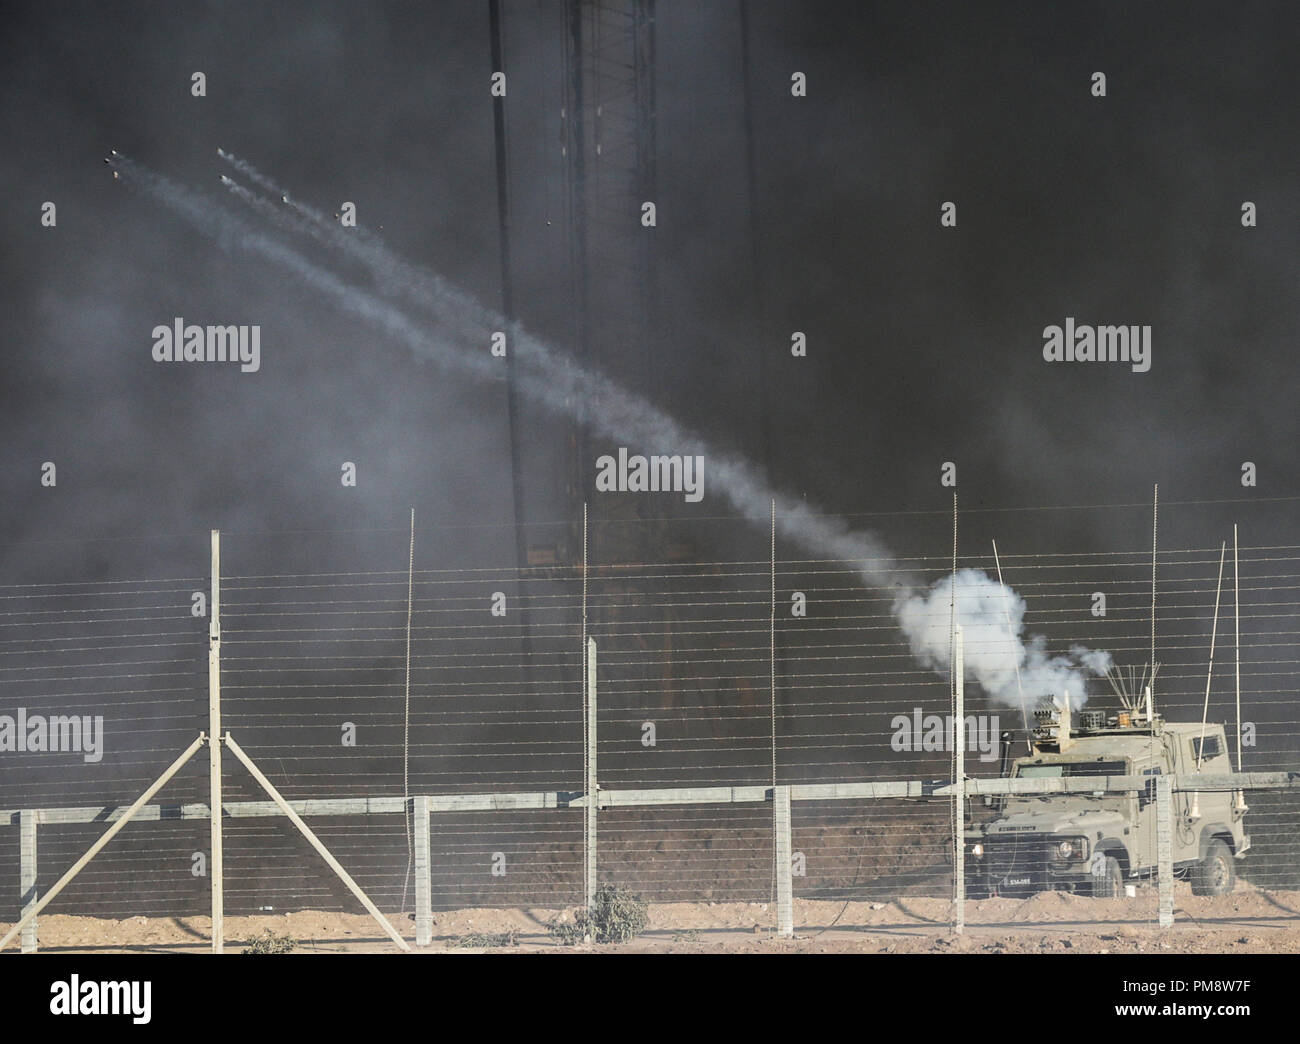 Die israelischen Streitkräfte gesehen Befeuerung Gas während der Auseinandersetzungen. Auseinandersetzungen zwischen palästinensischen Demonstranten und israelischen Kräfte während eines Protestes entlang der israelischen Zaun östlich von Gaza-stadt. Stockfoto